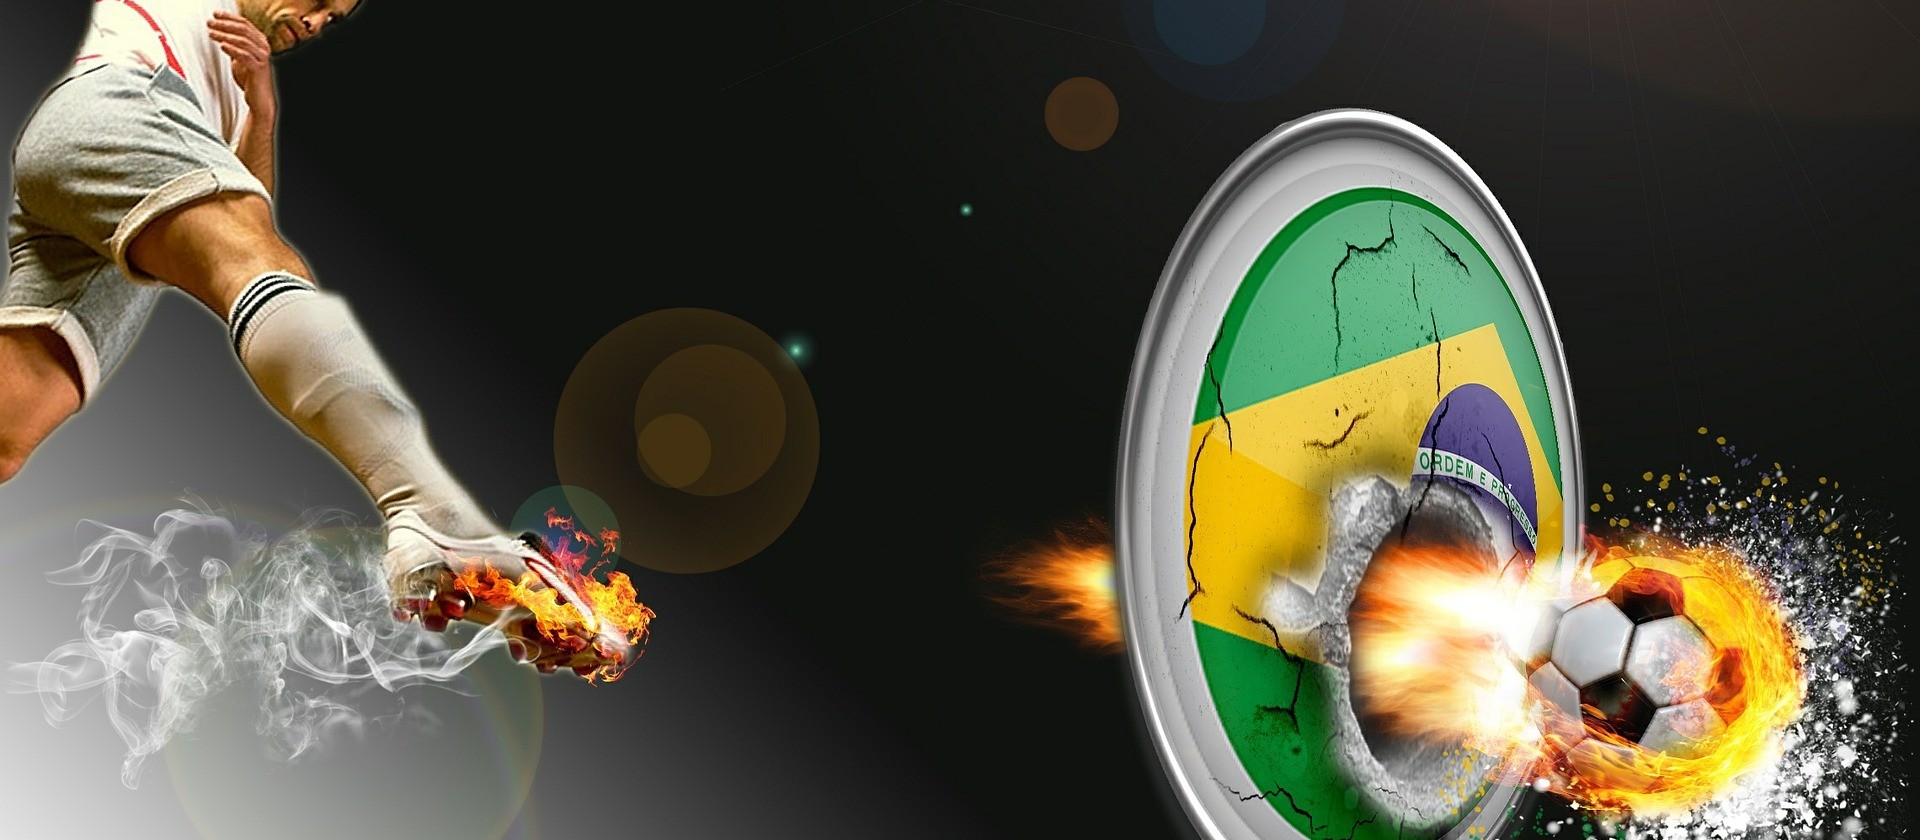 Confira o horário especial de atendimento dos serviços públicos nos dias de jogos do Brasil